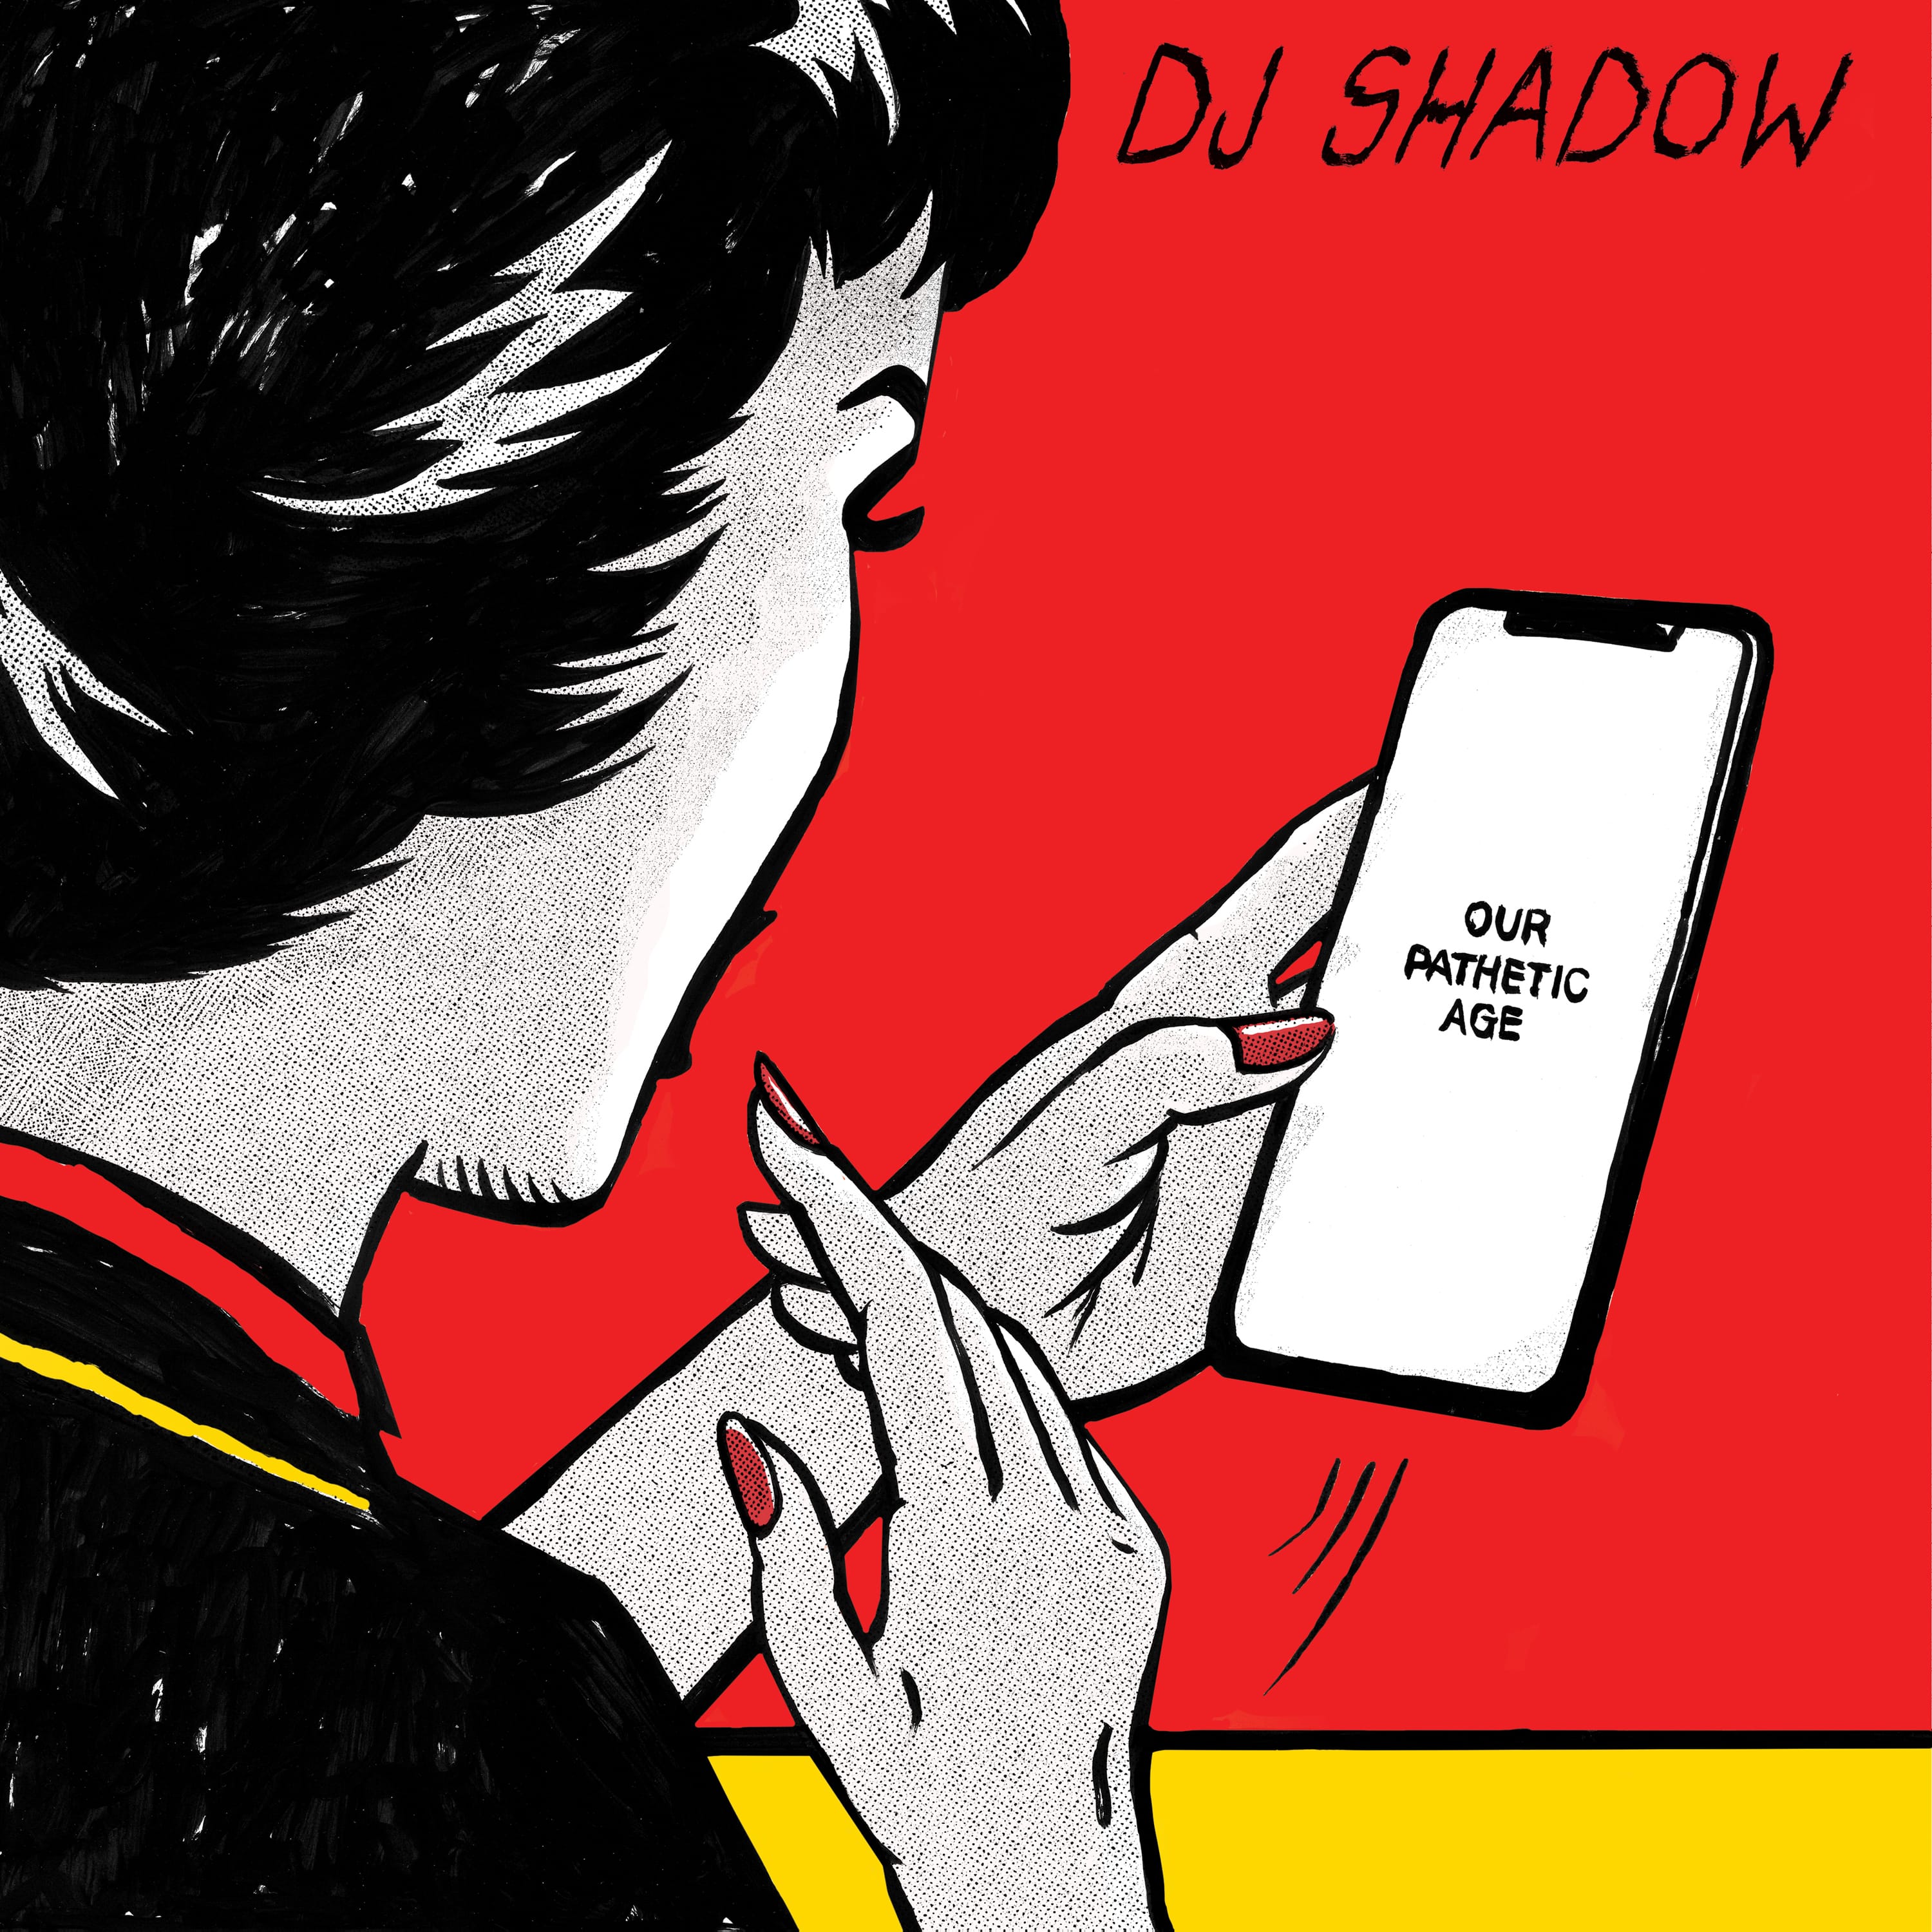 Disco della settimana: Dj Shadow “Our Pathetic Age”